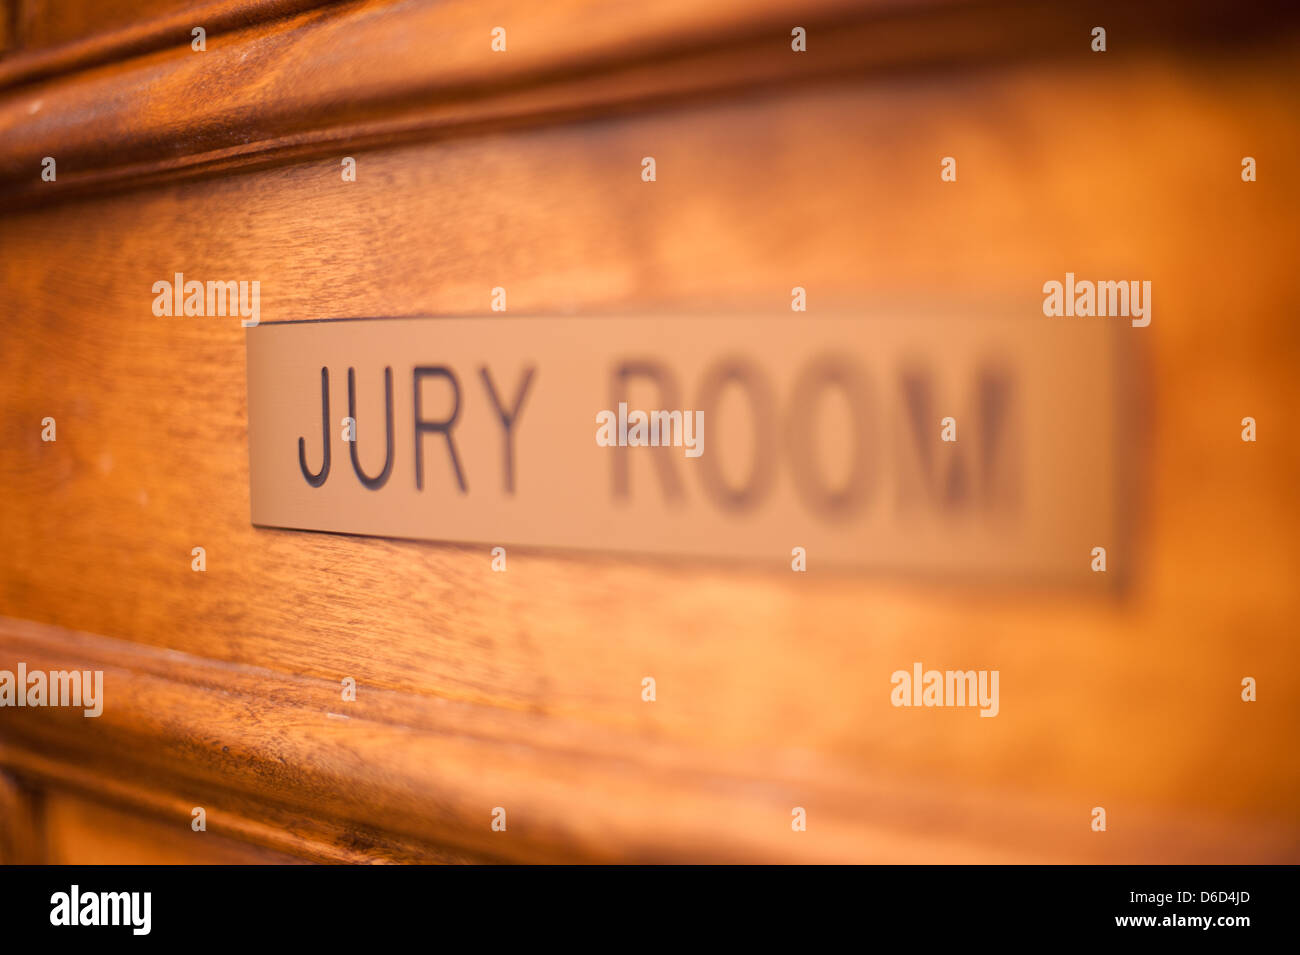 Jury room door. Stock Photo